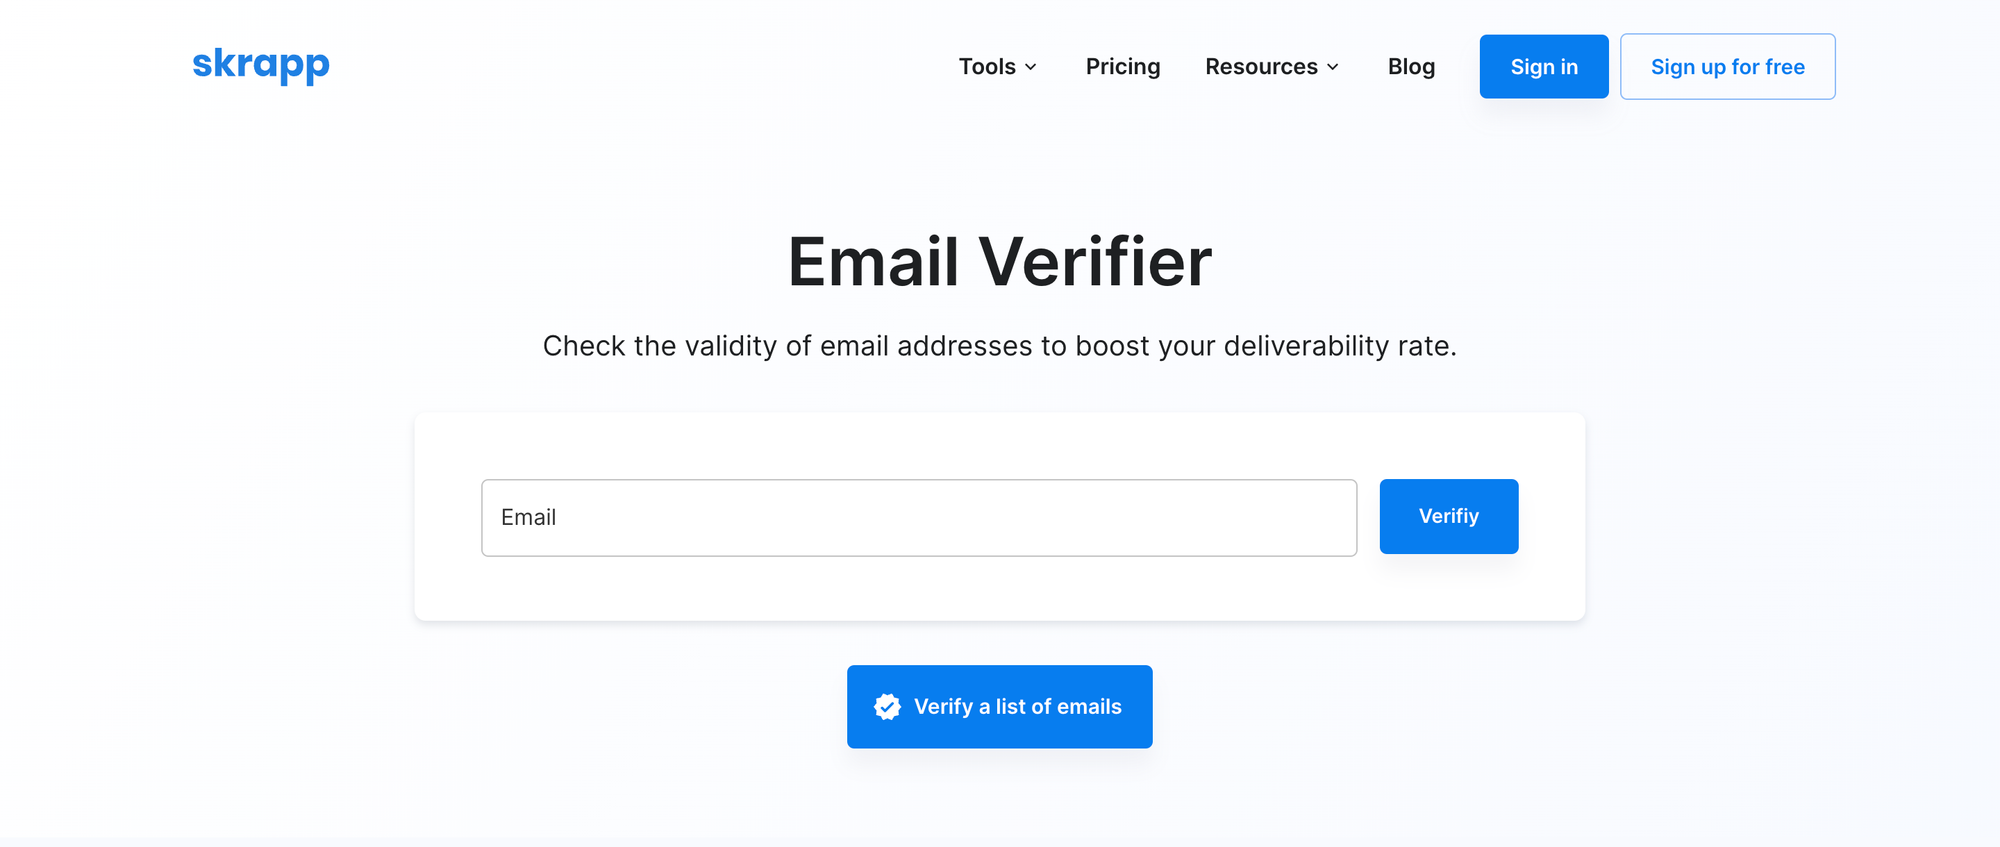 Skrapp - Email Verifier